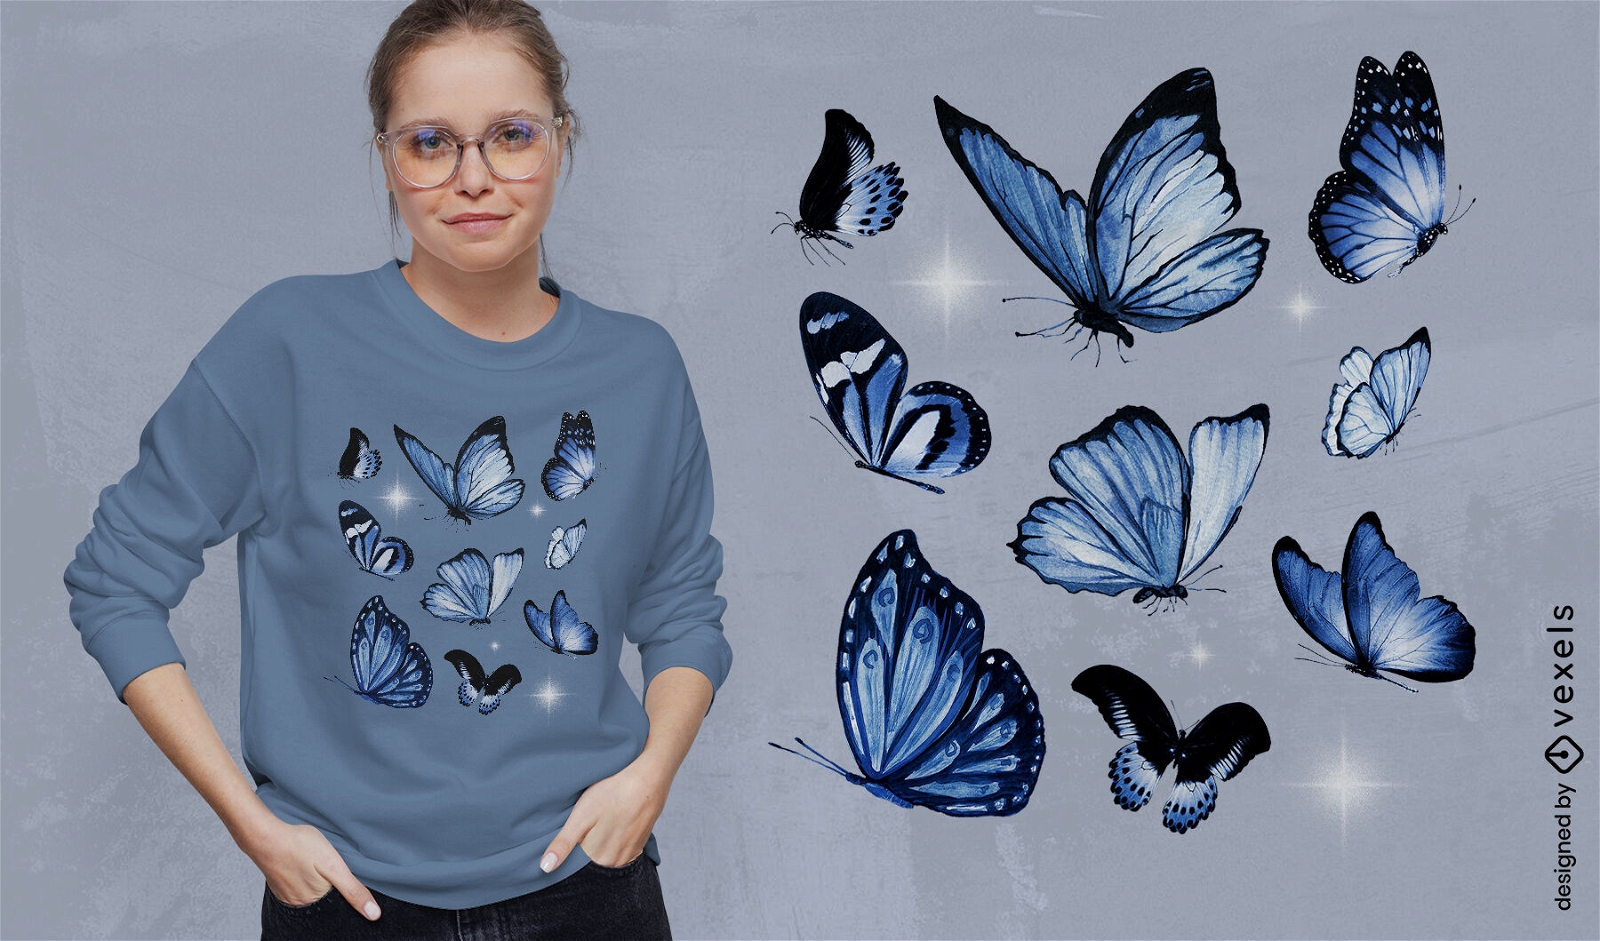 Dise?o de camiseta de mariposas azules realistas.